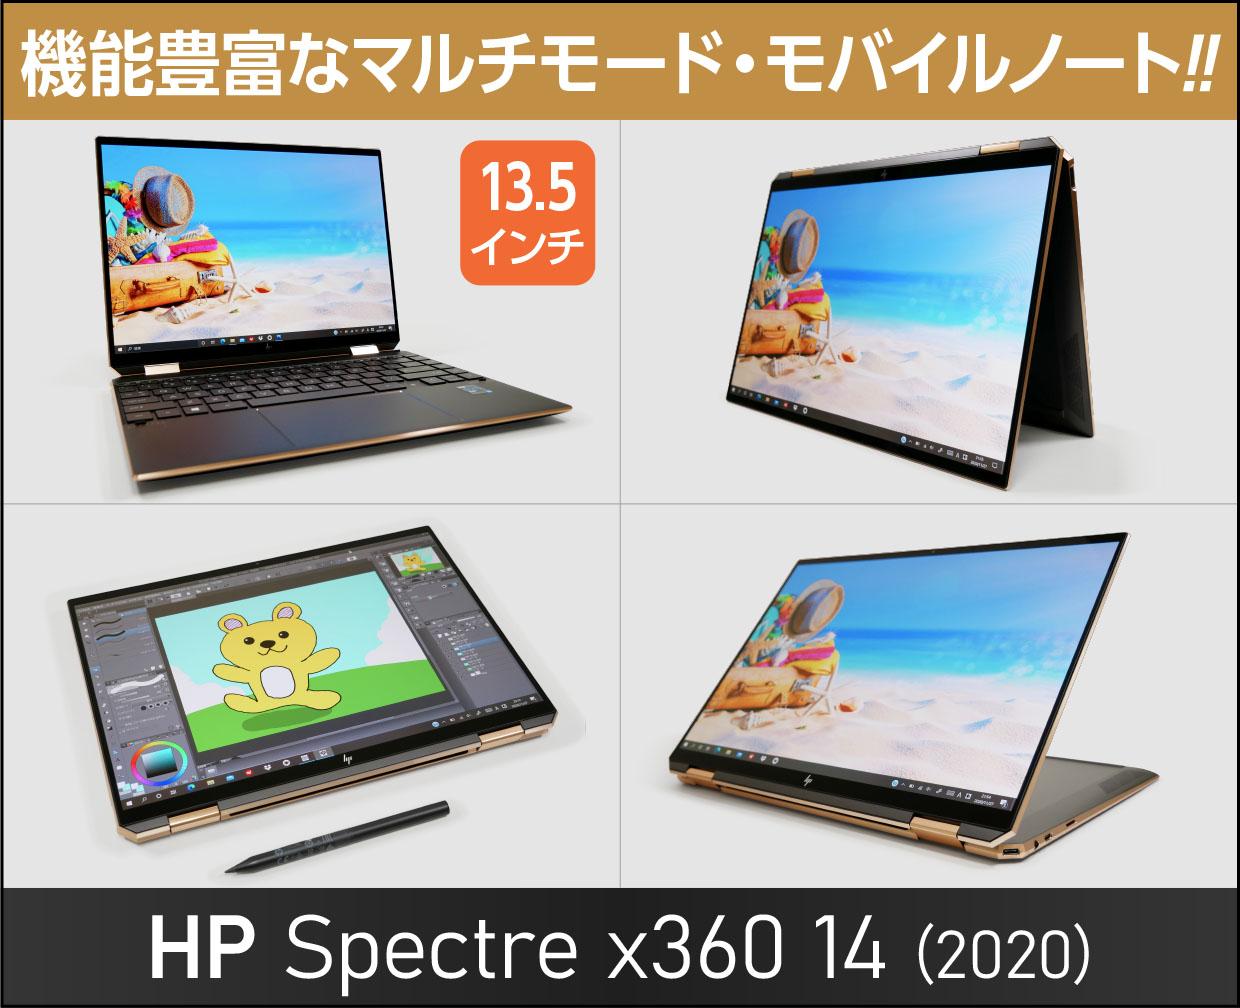 HP Spectre x360 14のメイン画像